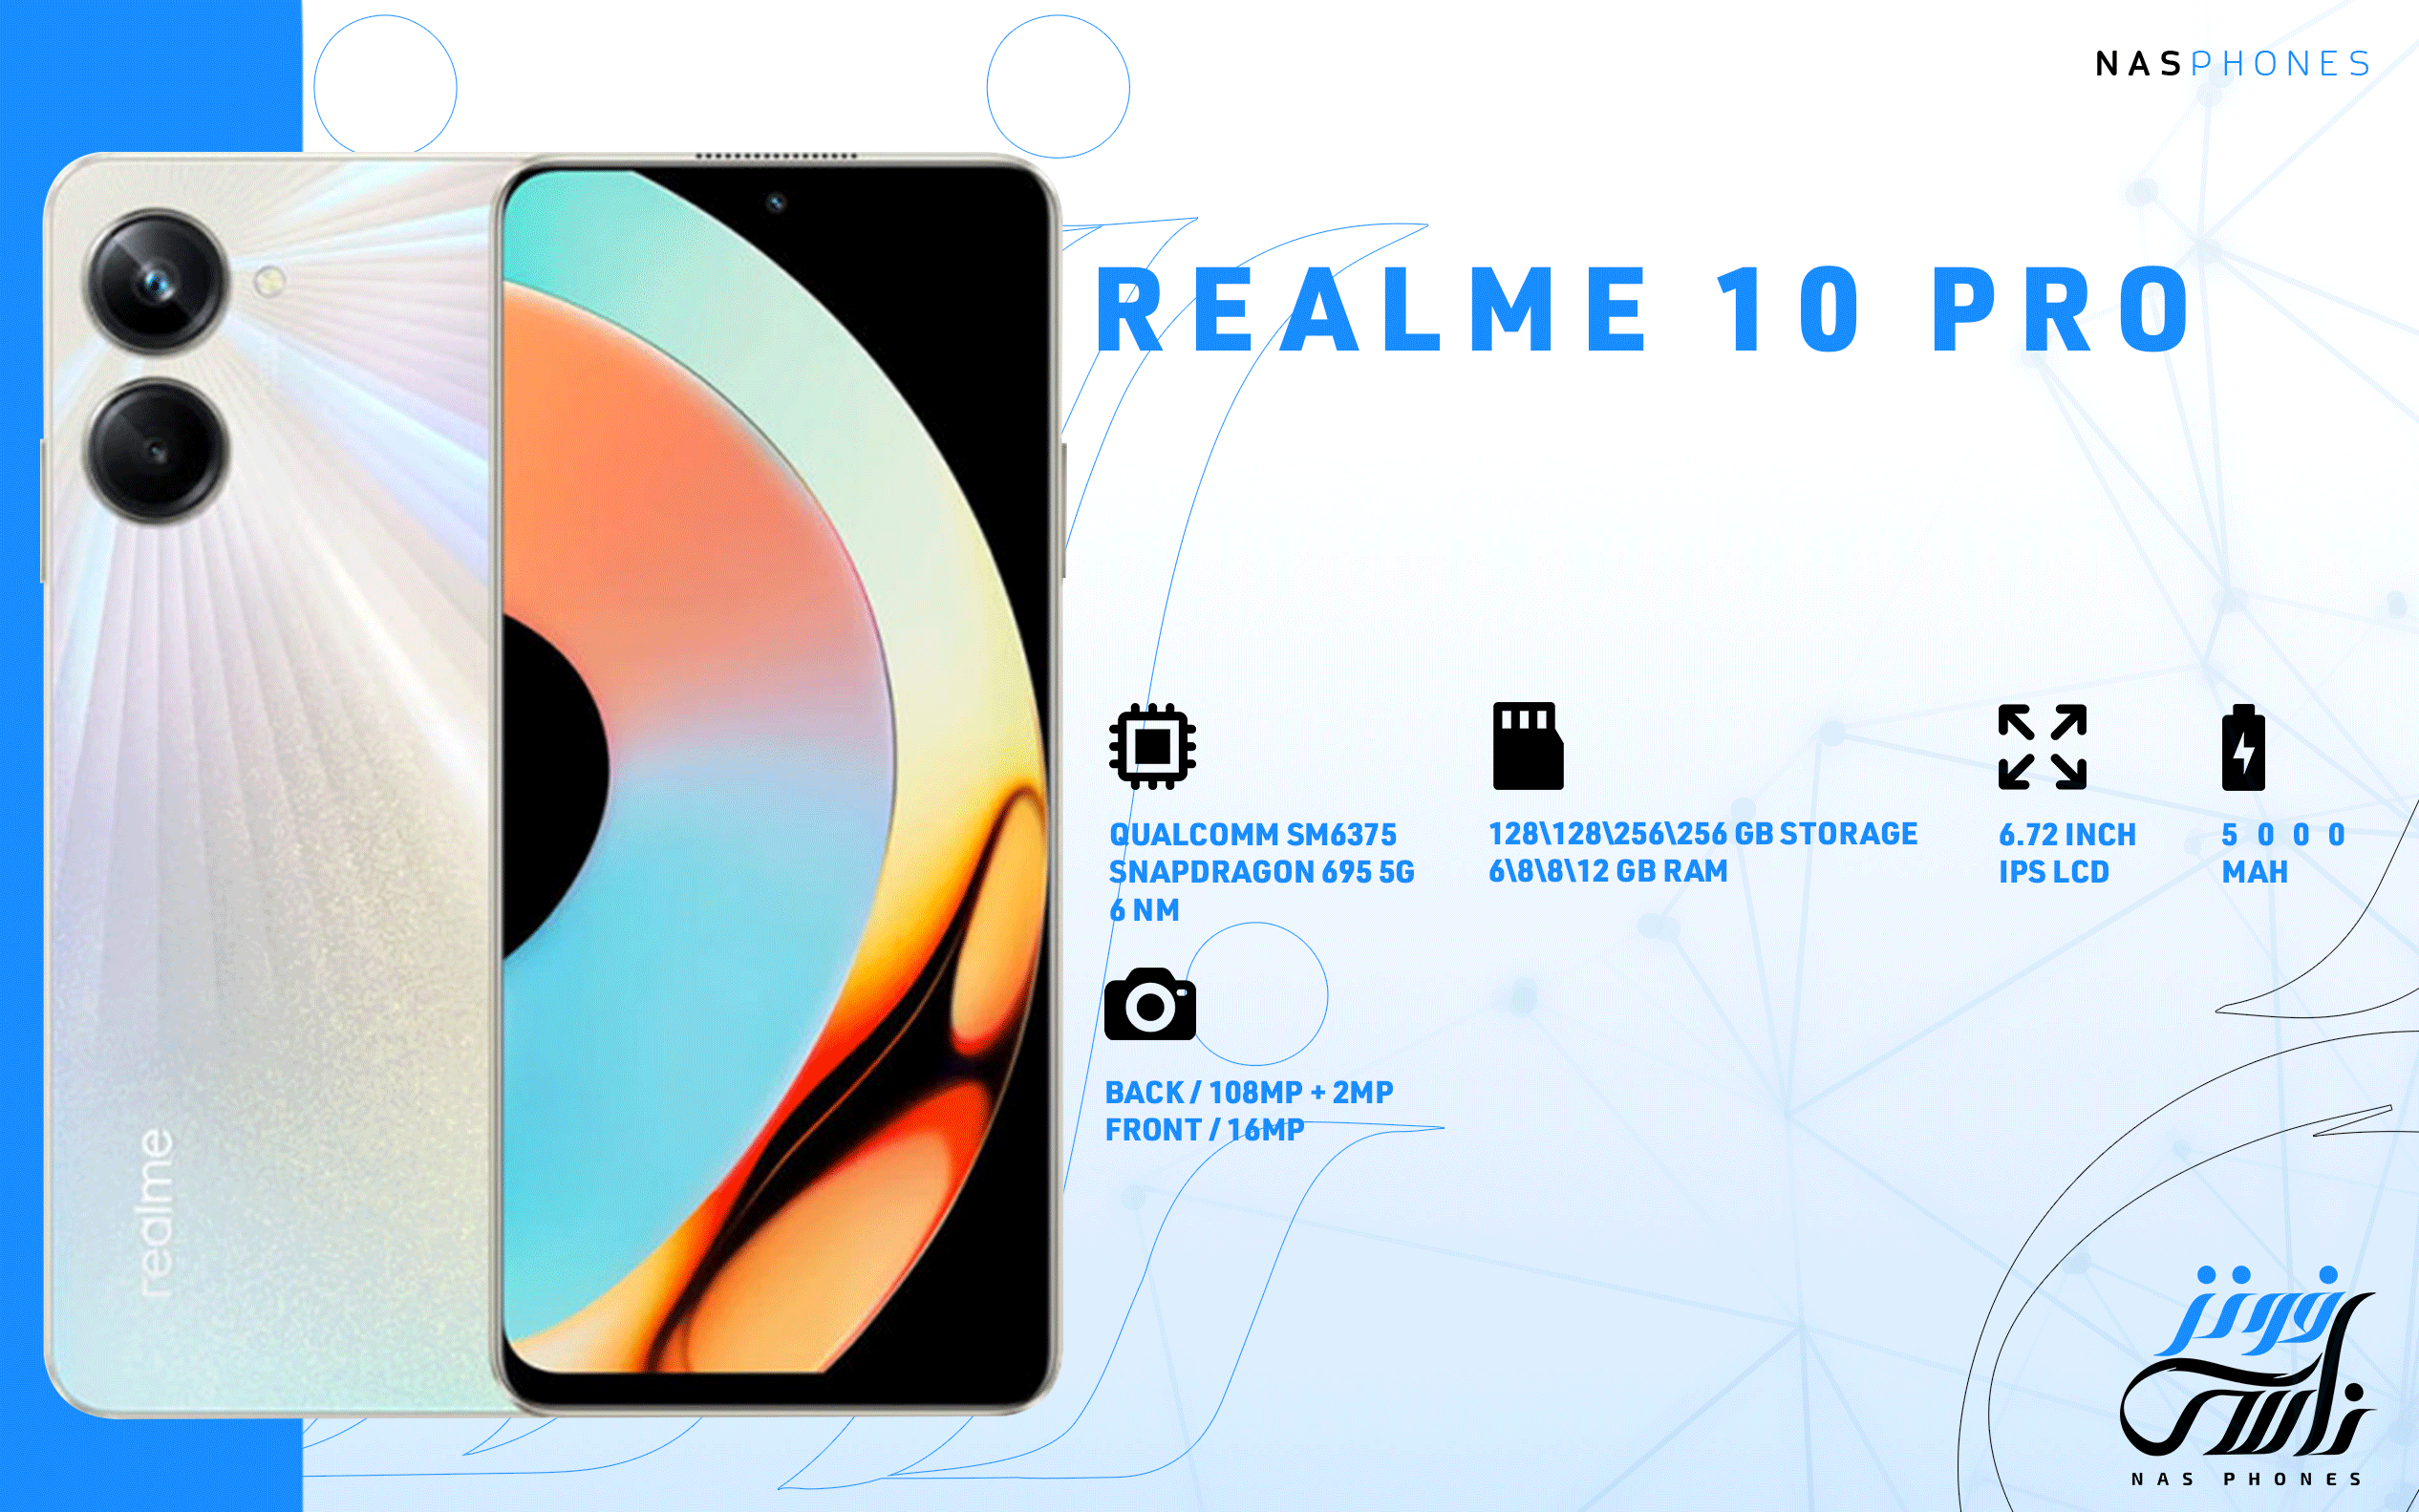 سعر ومواصفات هاتف Realme 10 pro